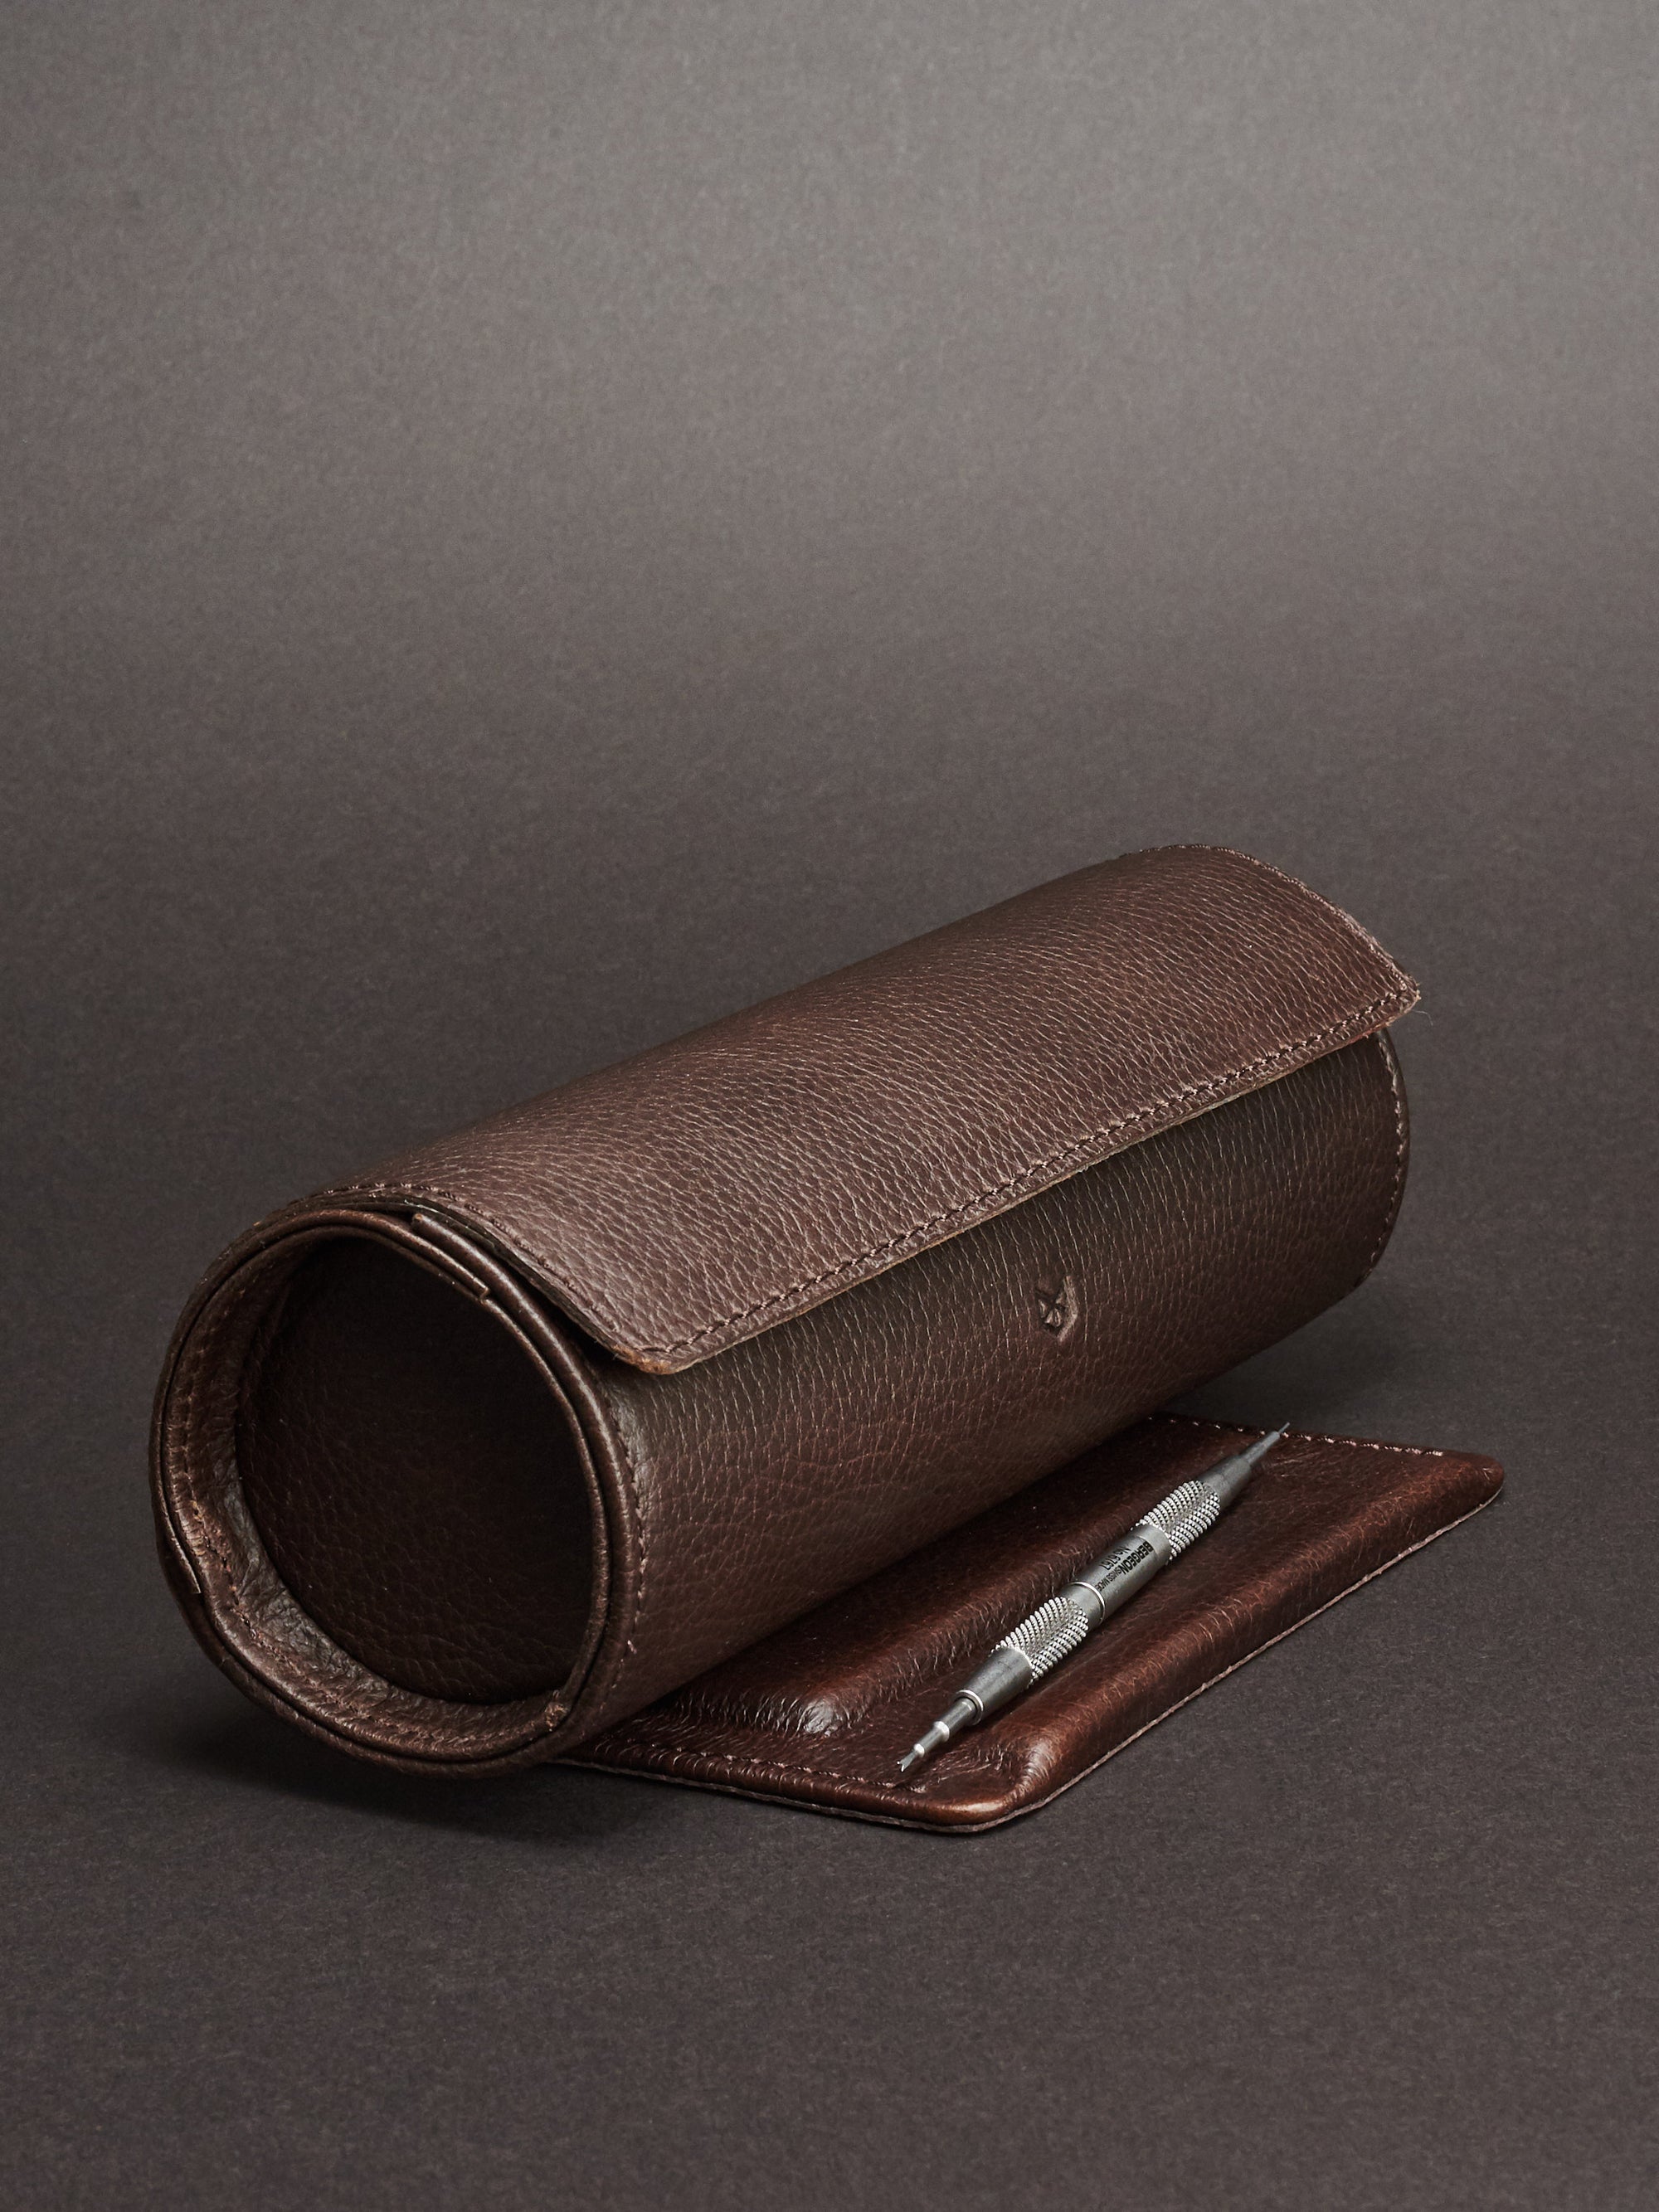 Watch case holder dark brown by Capra Leather